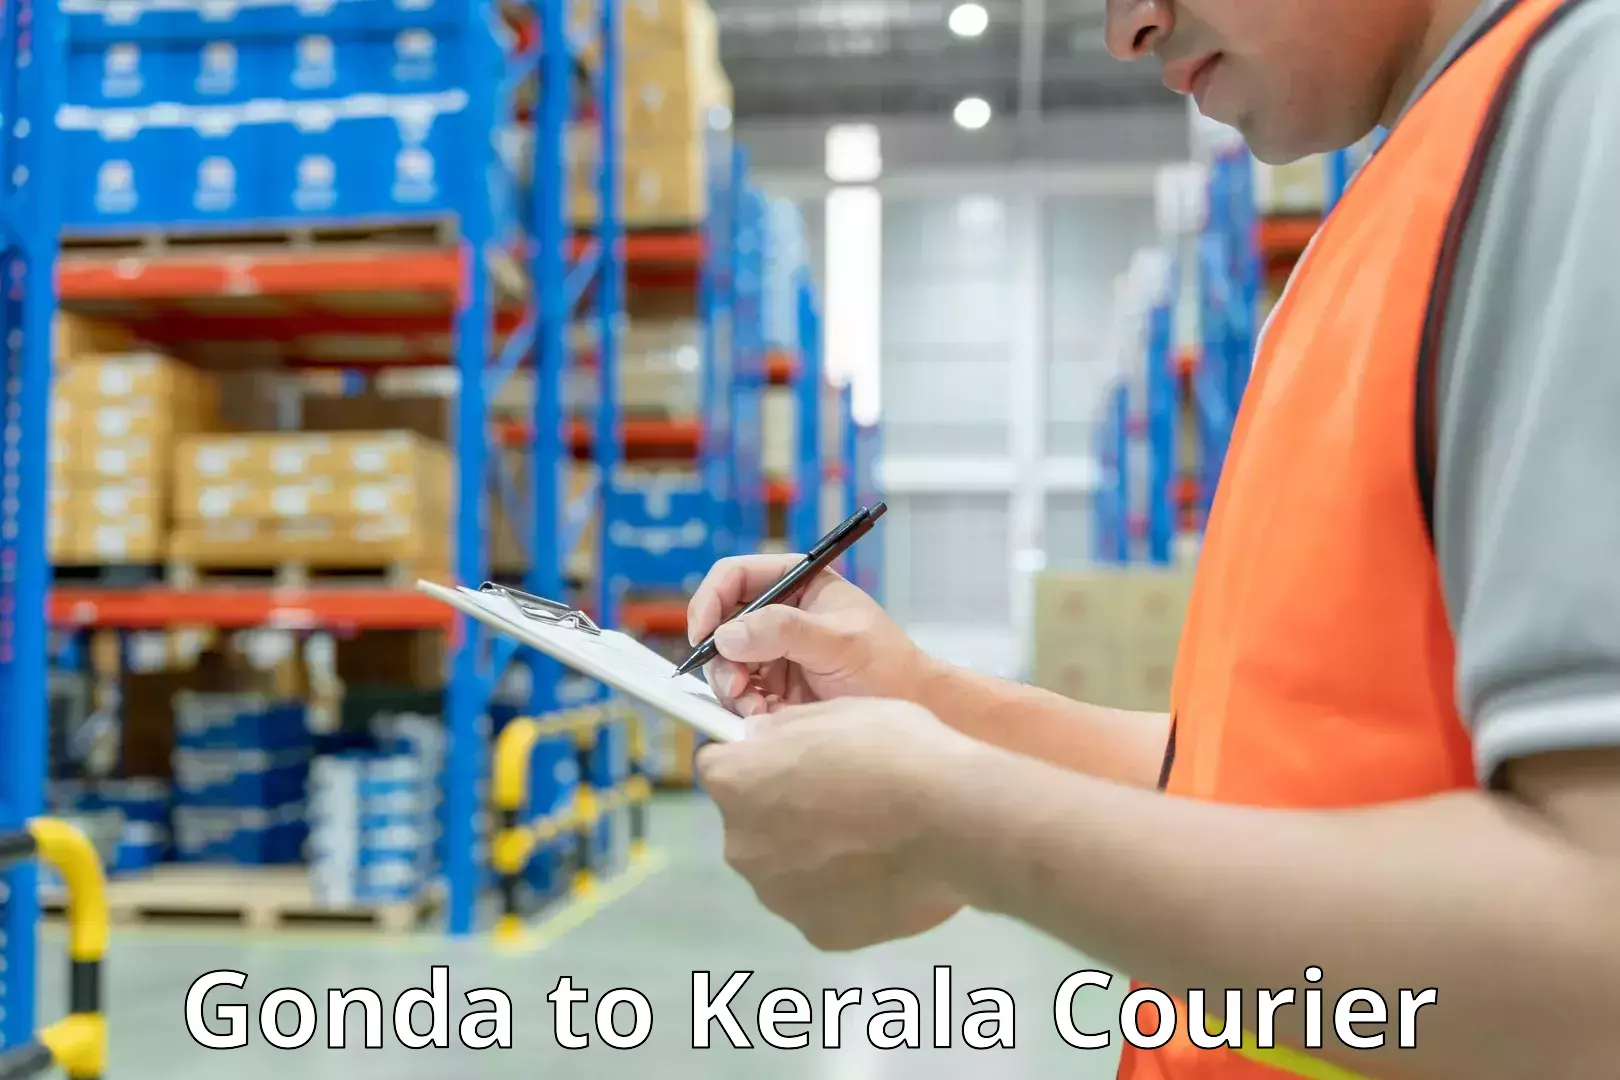 Baggage shipping experts Gonda to Kerala